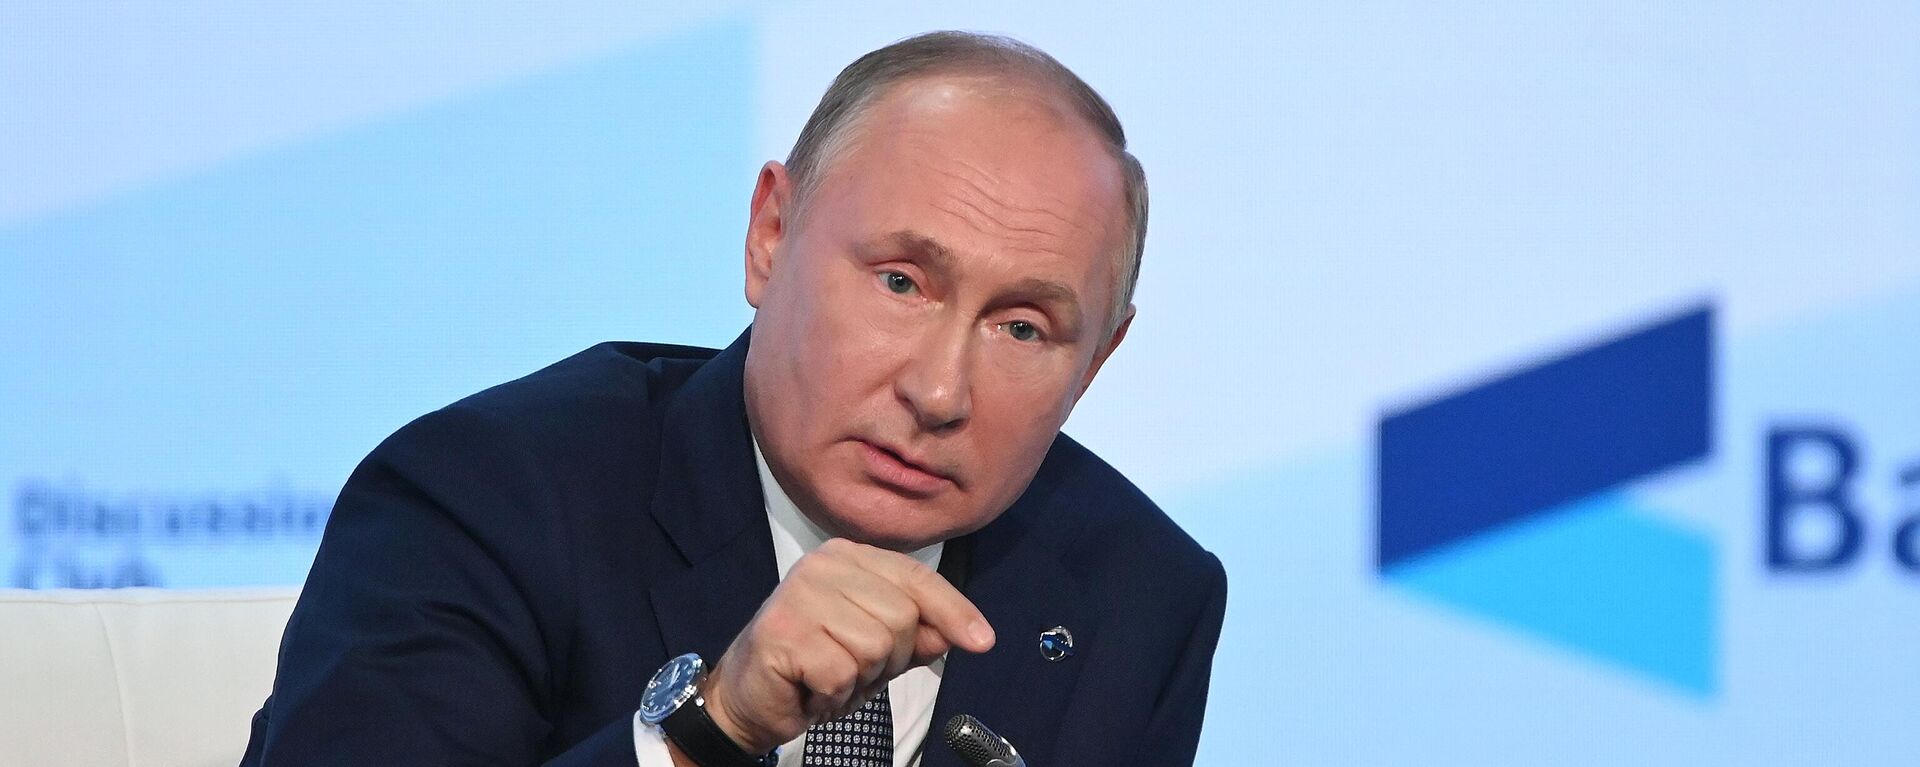 Vladímir Putin, presidente de Rusia, durante su intervención en el Club Internacional Valdái en Sochi (Rusia), el 21 de octubre del 2021 - Sputnik Mundo, 1920, 08.12.2021